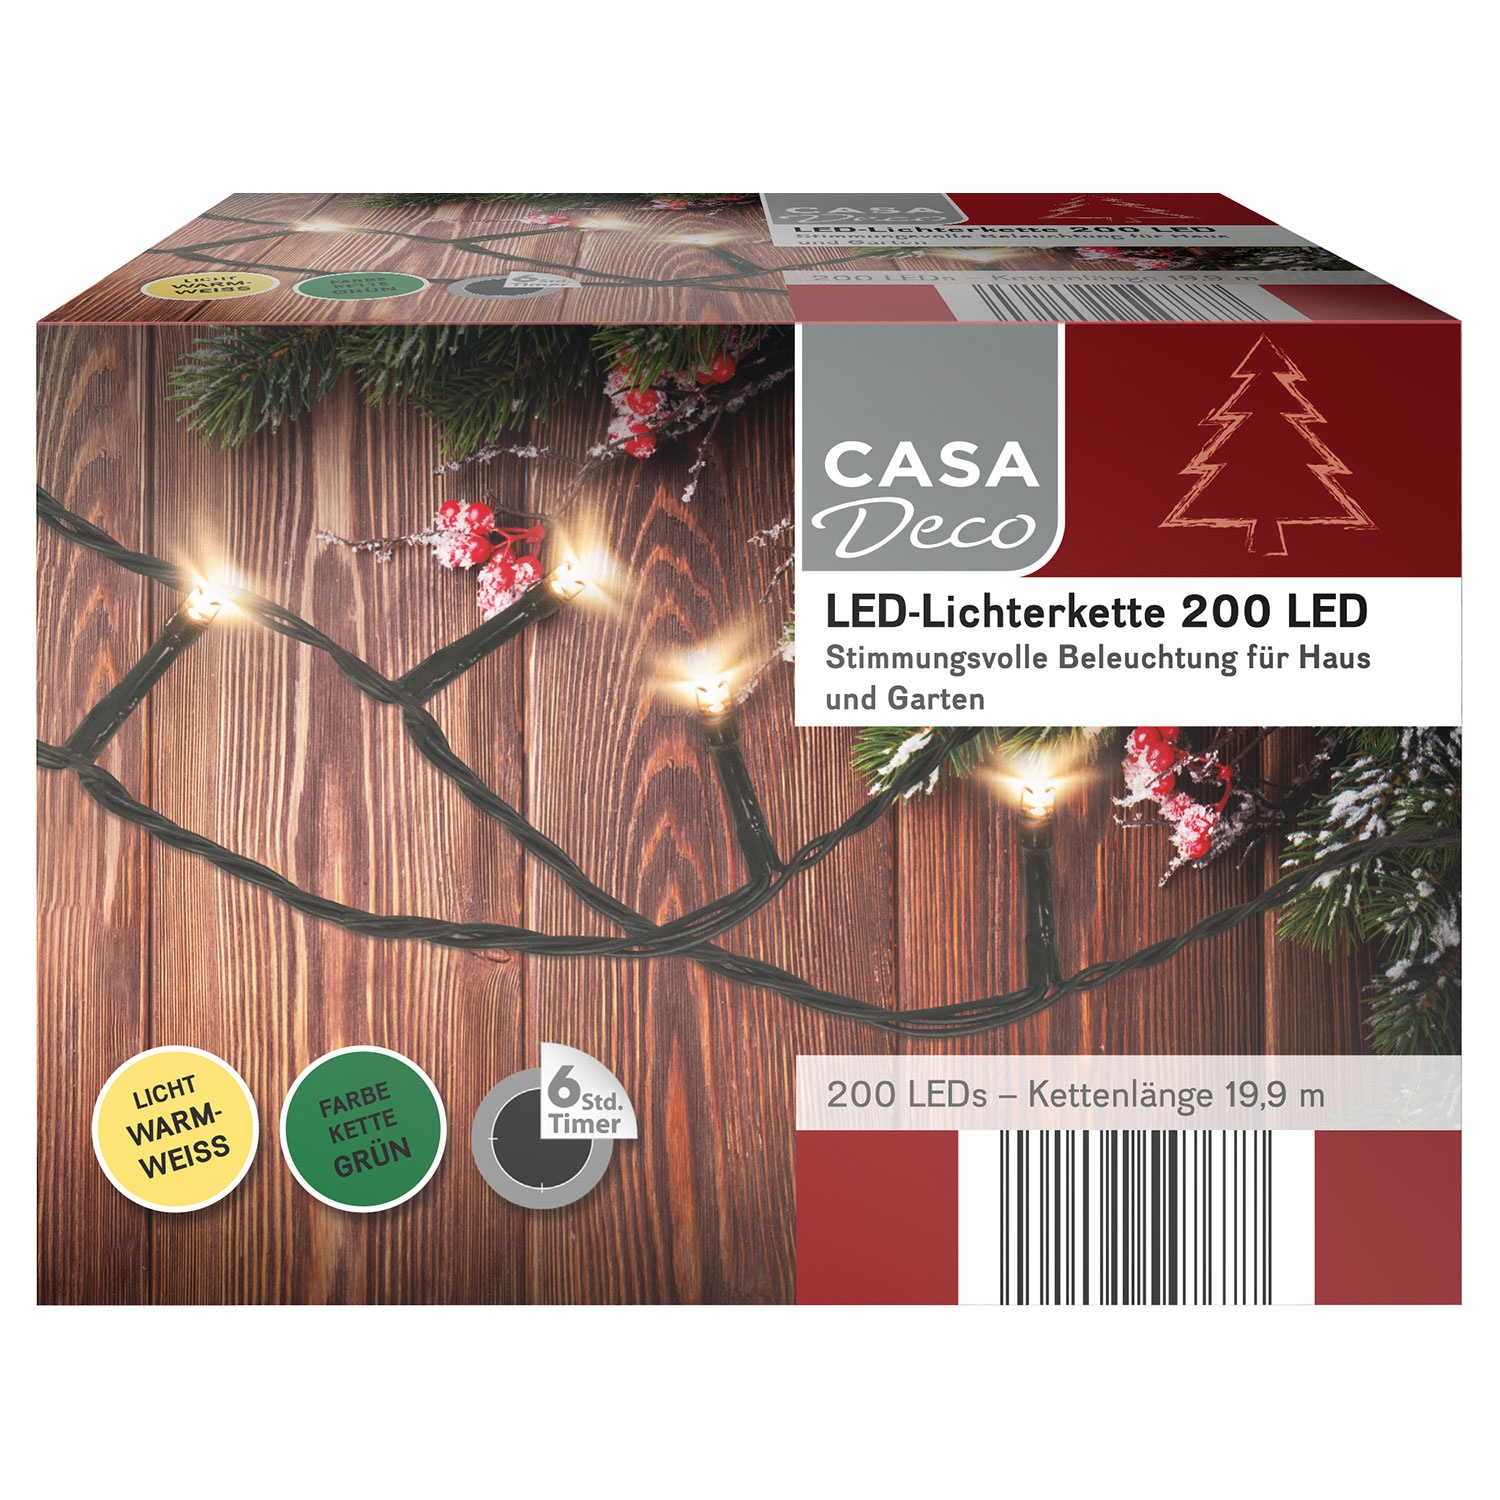 CASA DECO LED-Lichterkette mit 200 LEDs